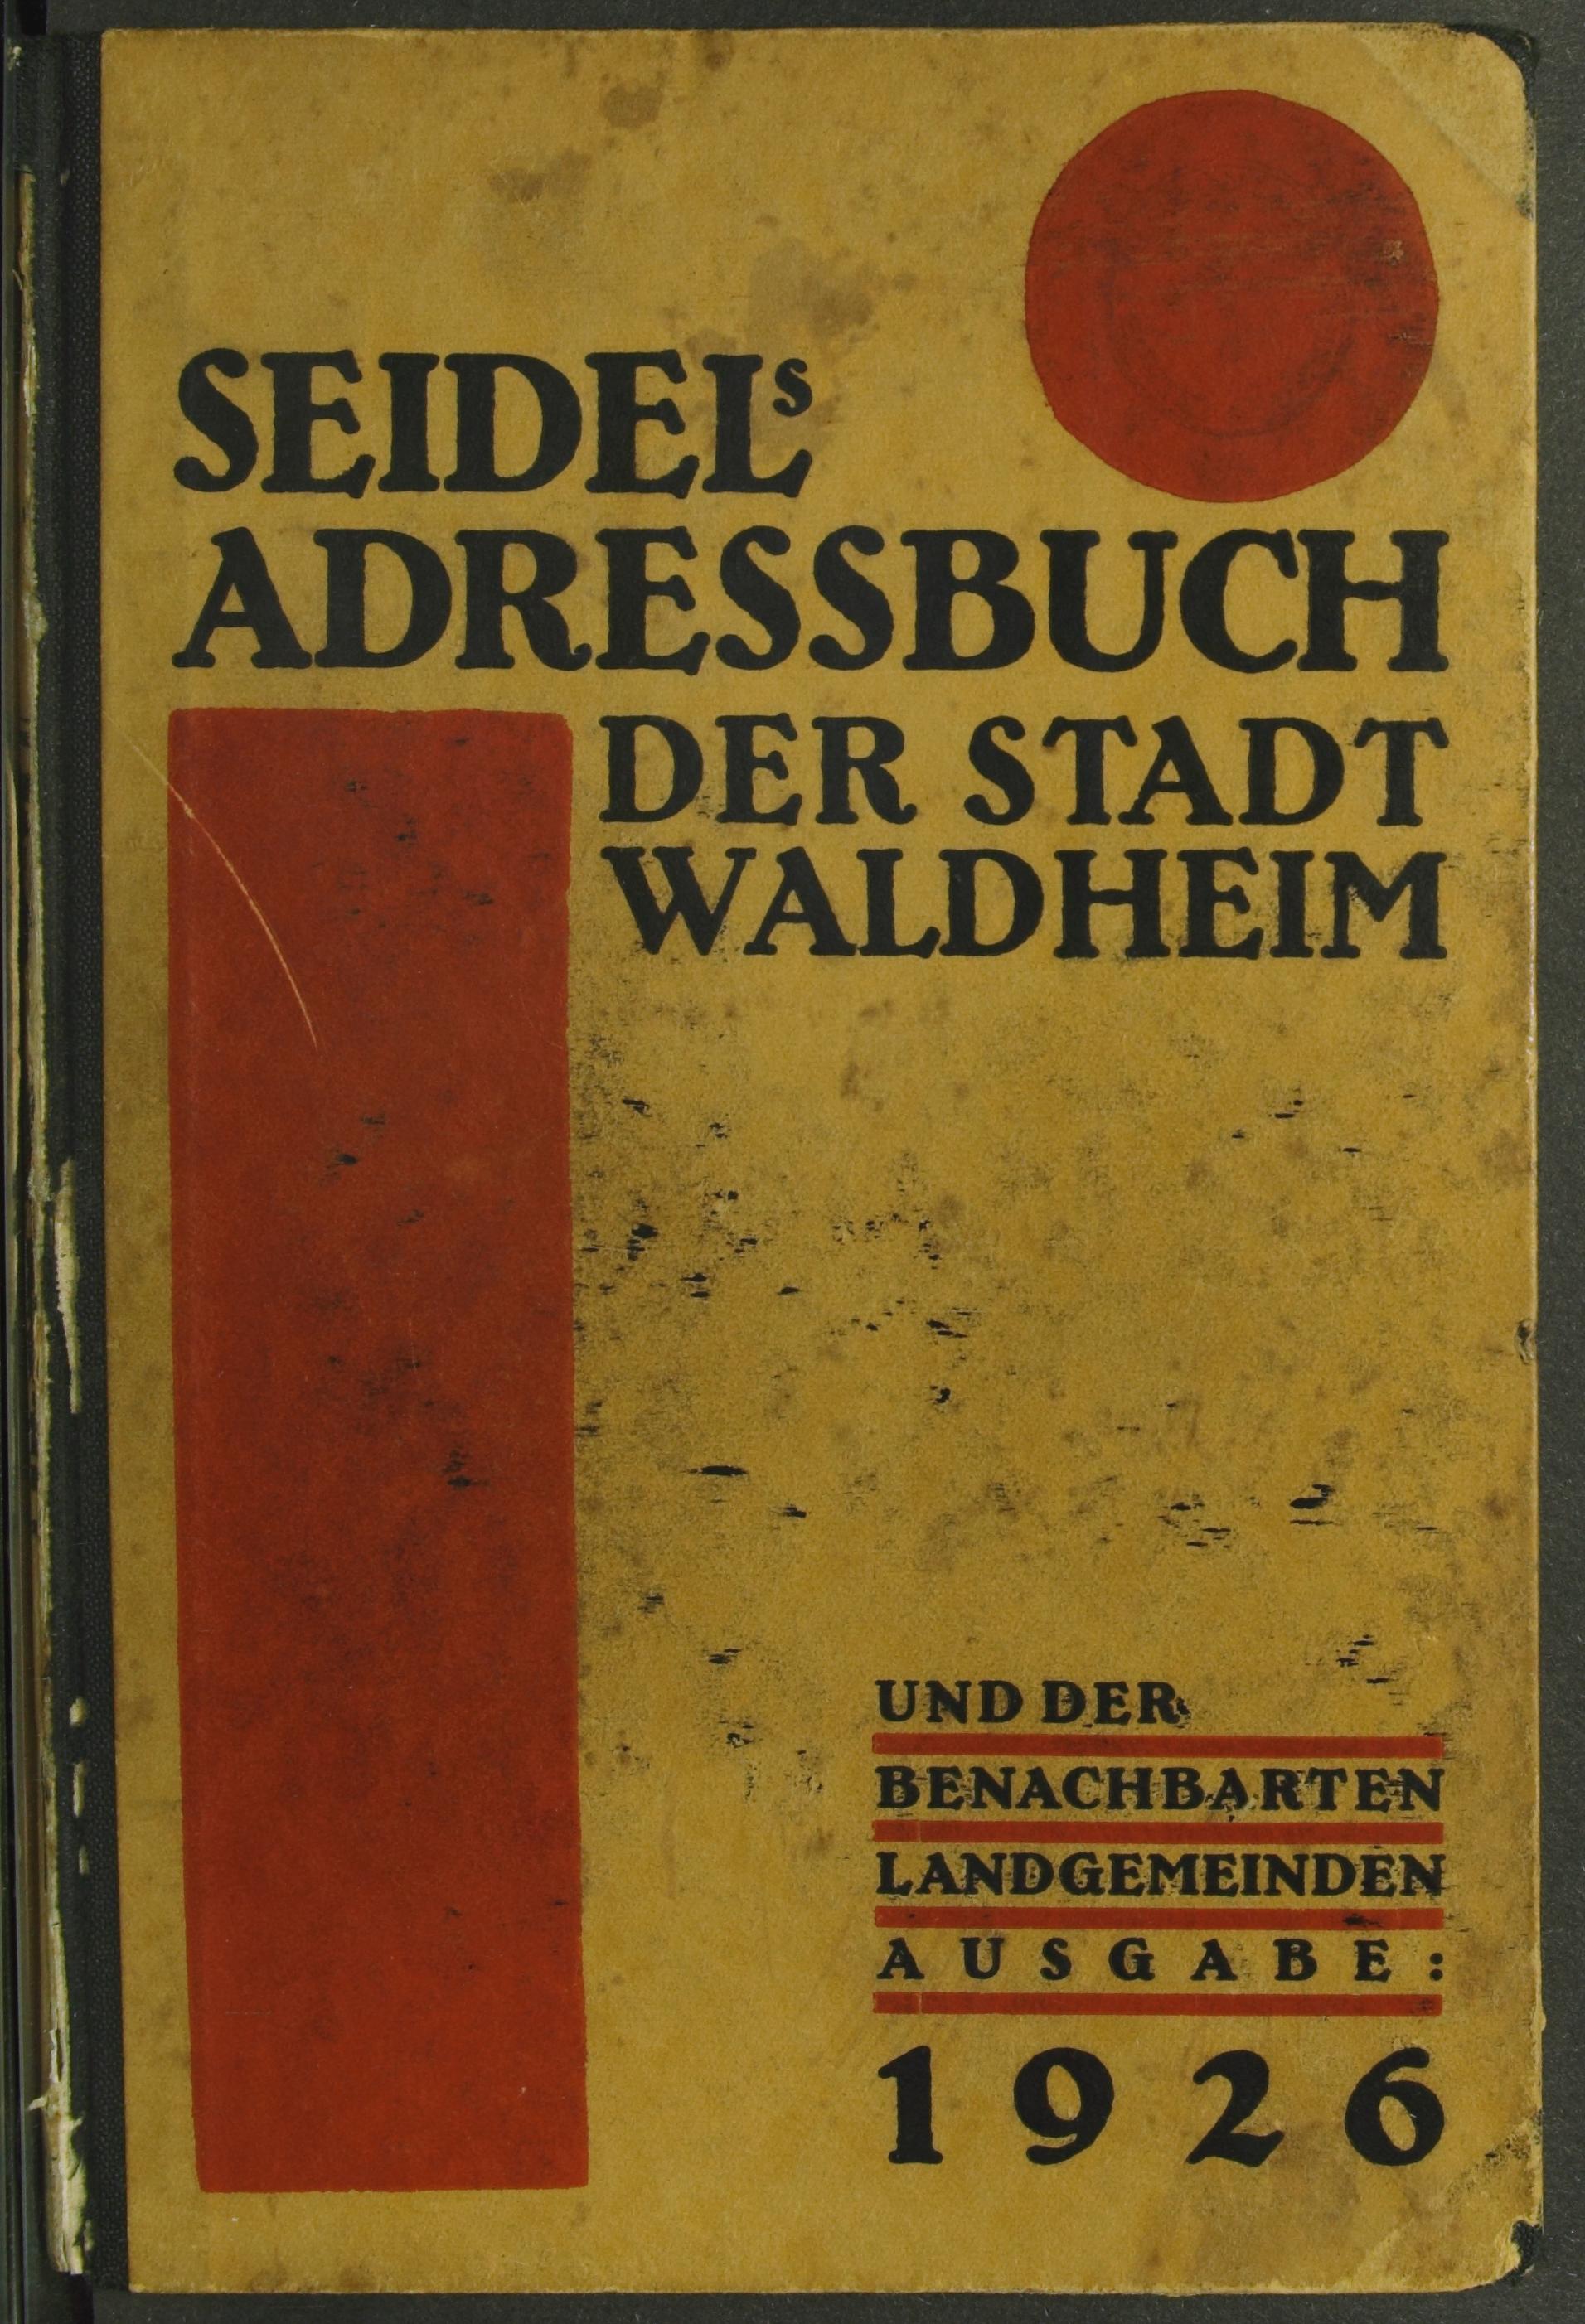 Seidels Adreßbuch der Stadt Waldheim und der benachbarten Landgemeinden 1926